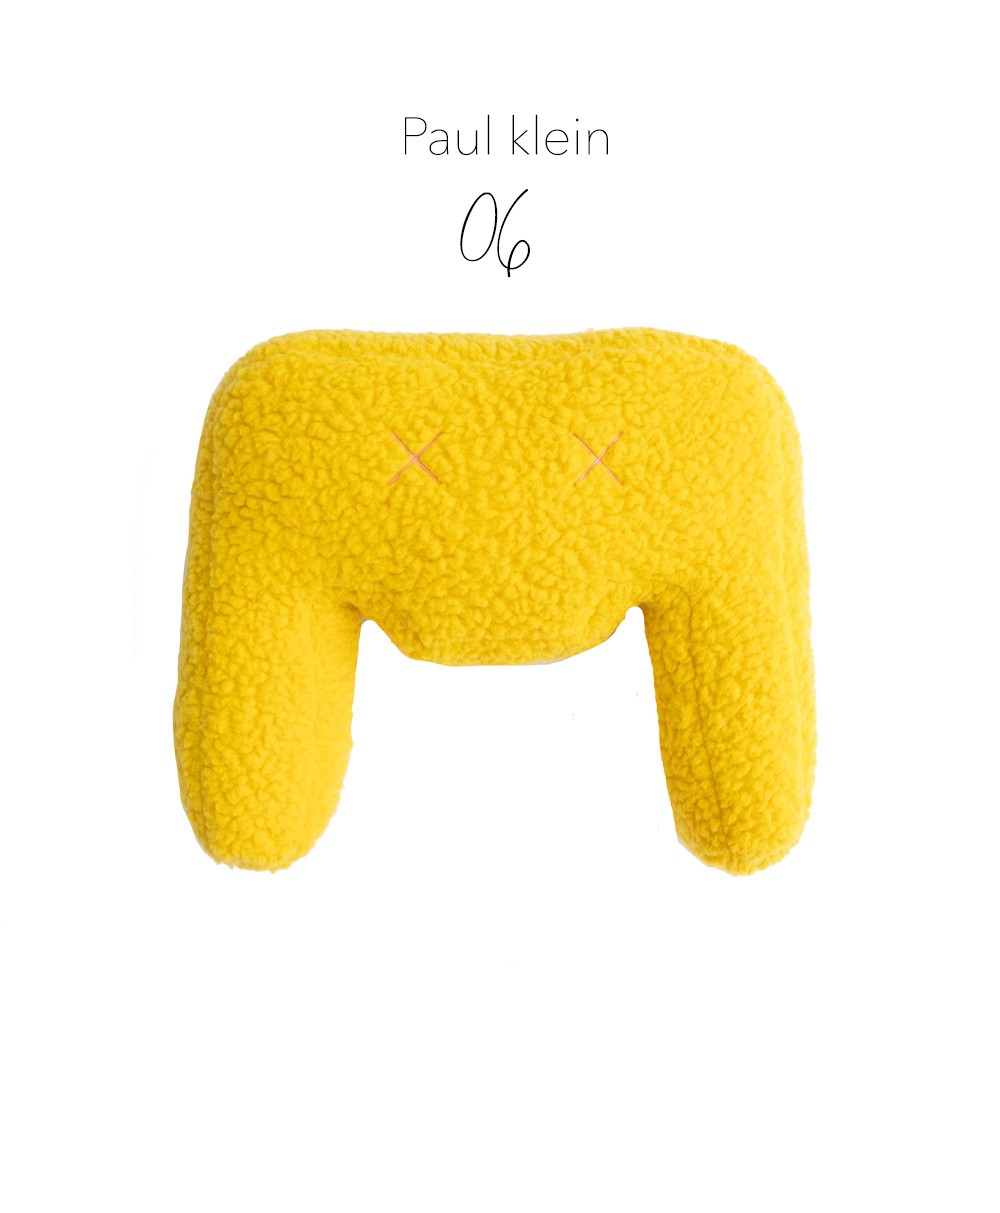 Produktbild des "Monster Paul klein"  des Herstellers LPJ im RAUM Conceptstore